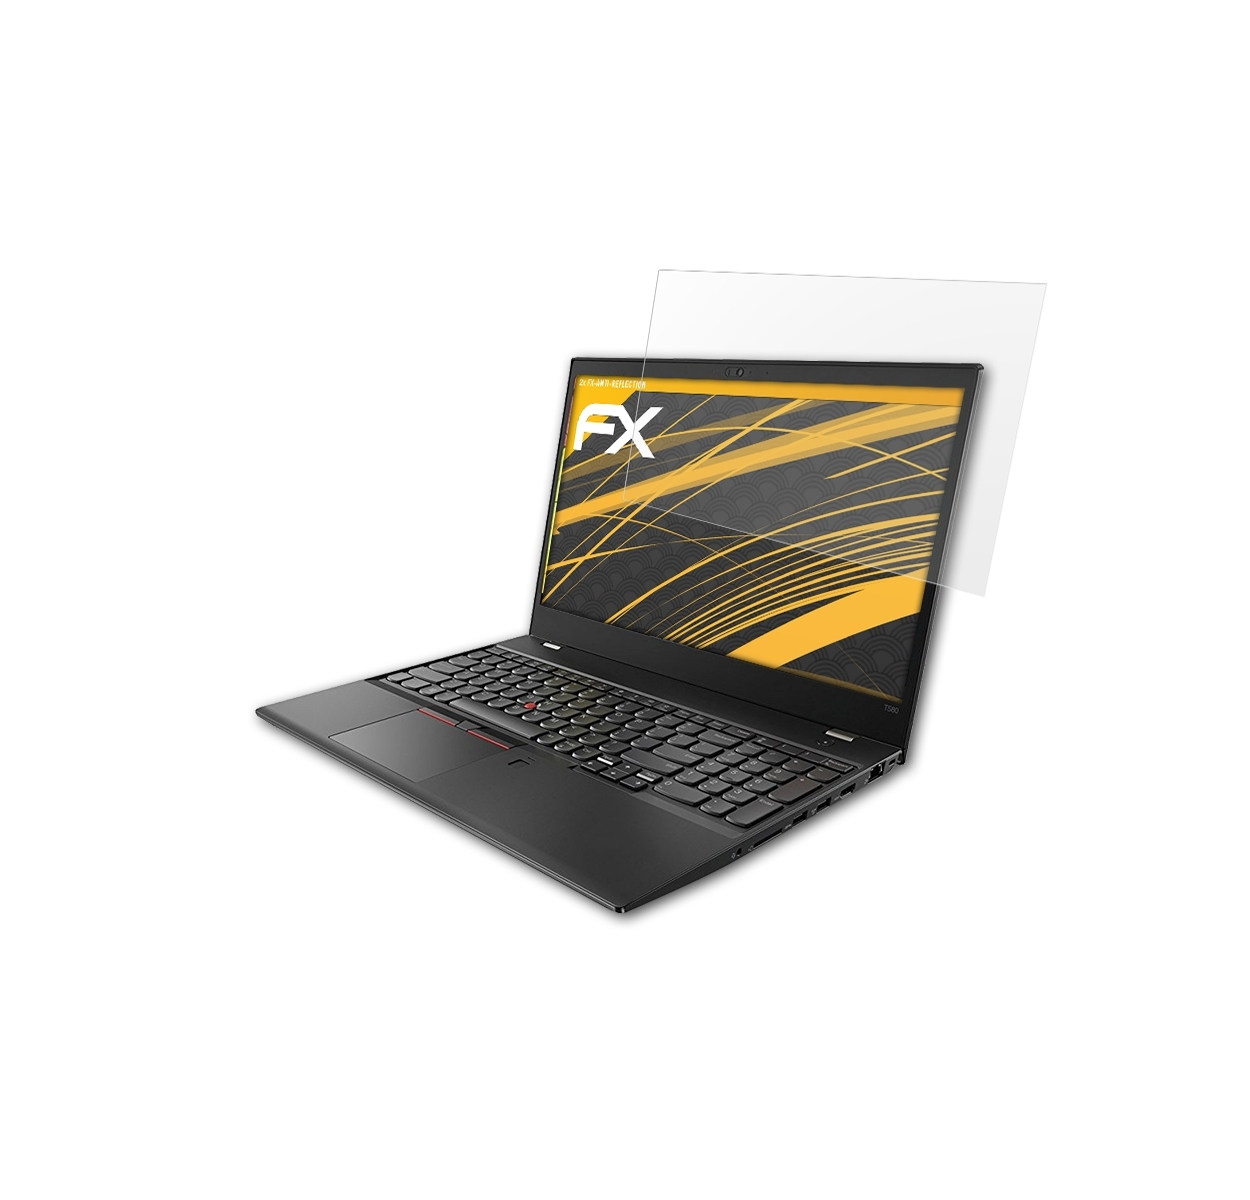 FX-Antireflex T580) Displayschutz(für ATFOLIX ThinkPad 2x Lenovo